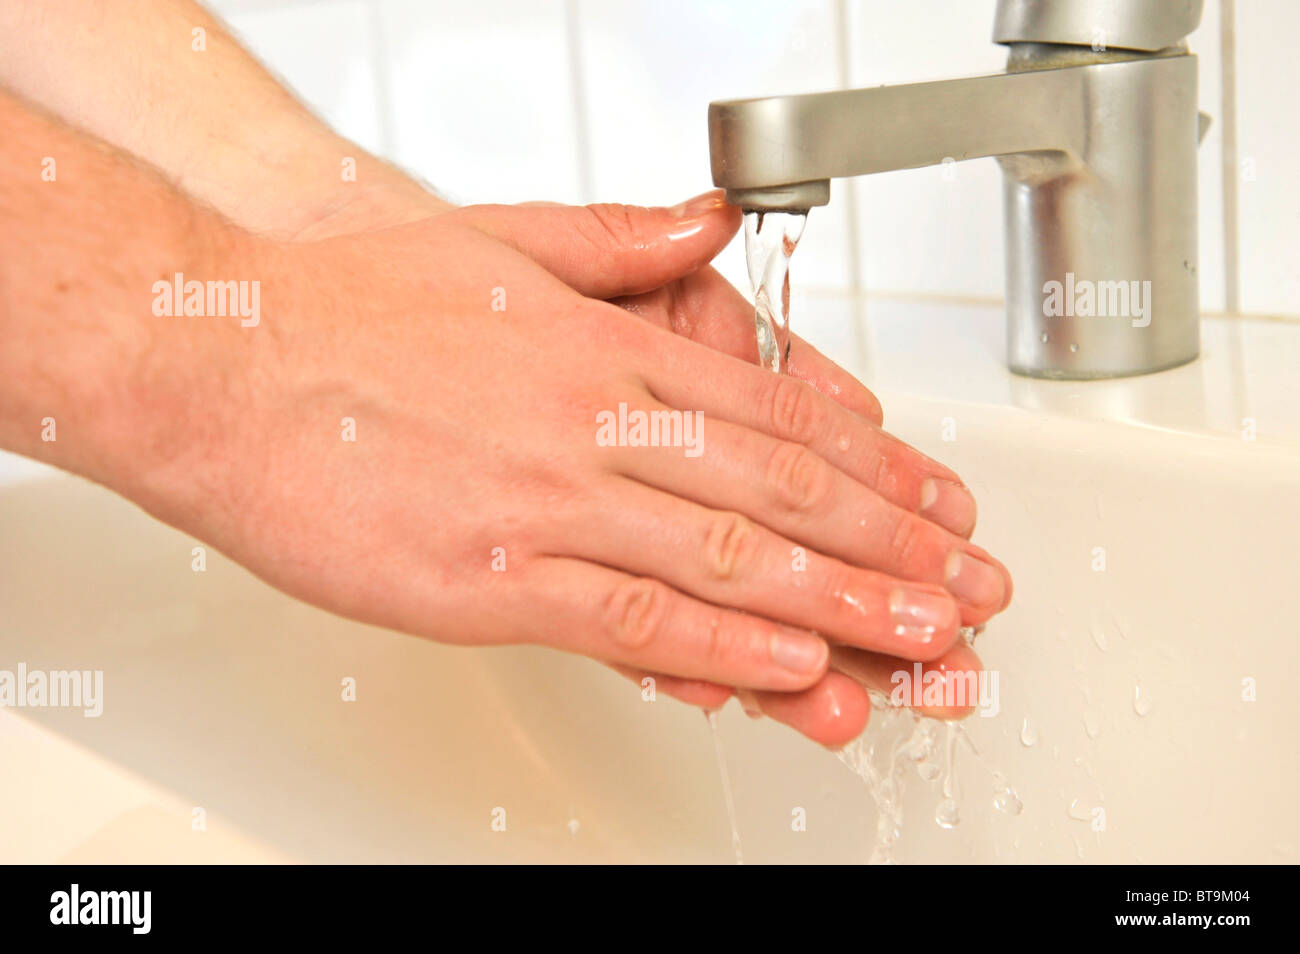 Personne de laver ses mains avec du savon Banque D'Images